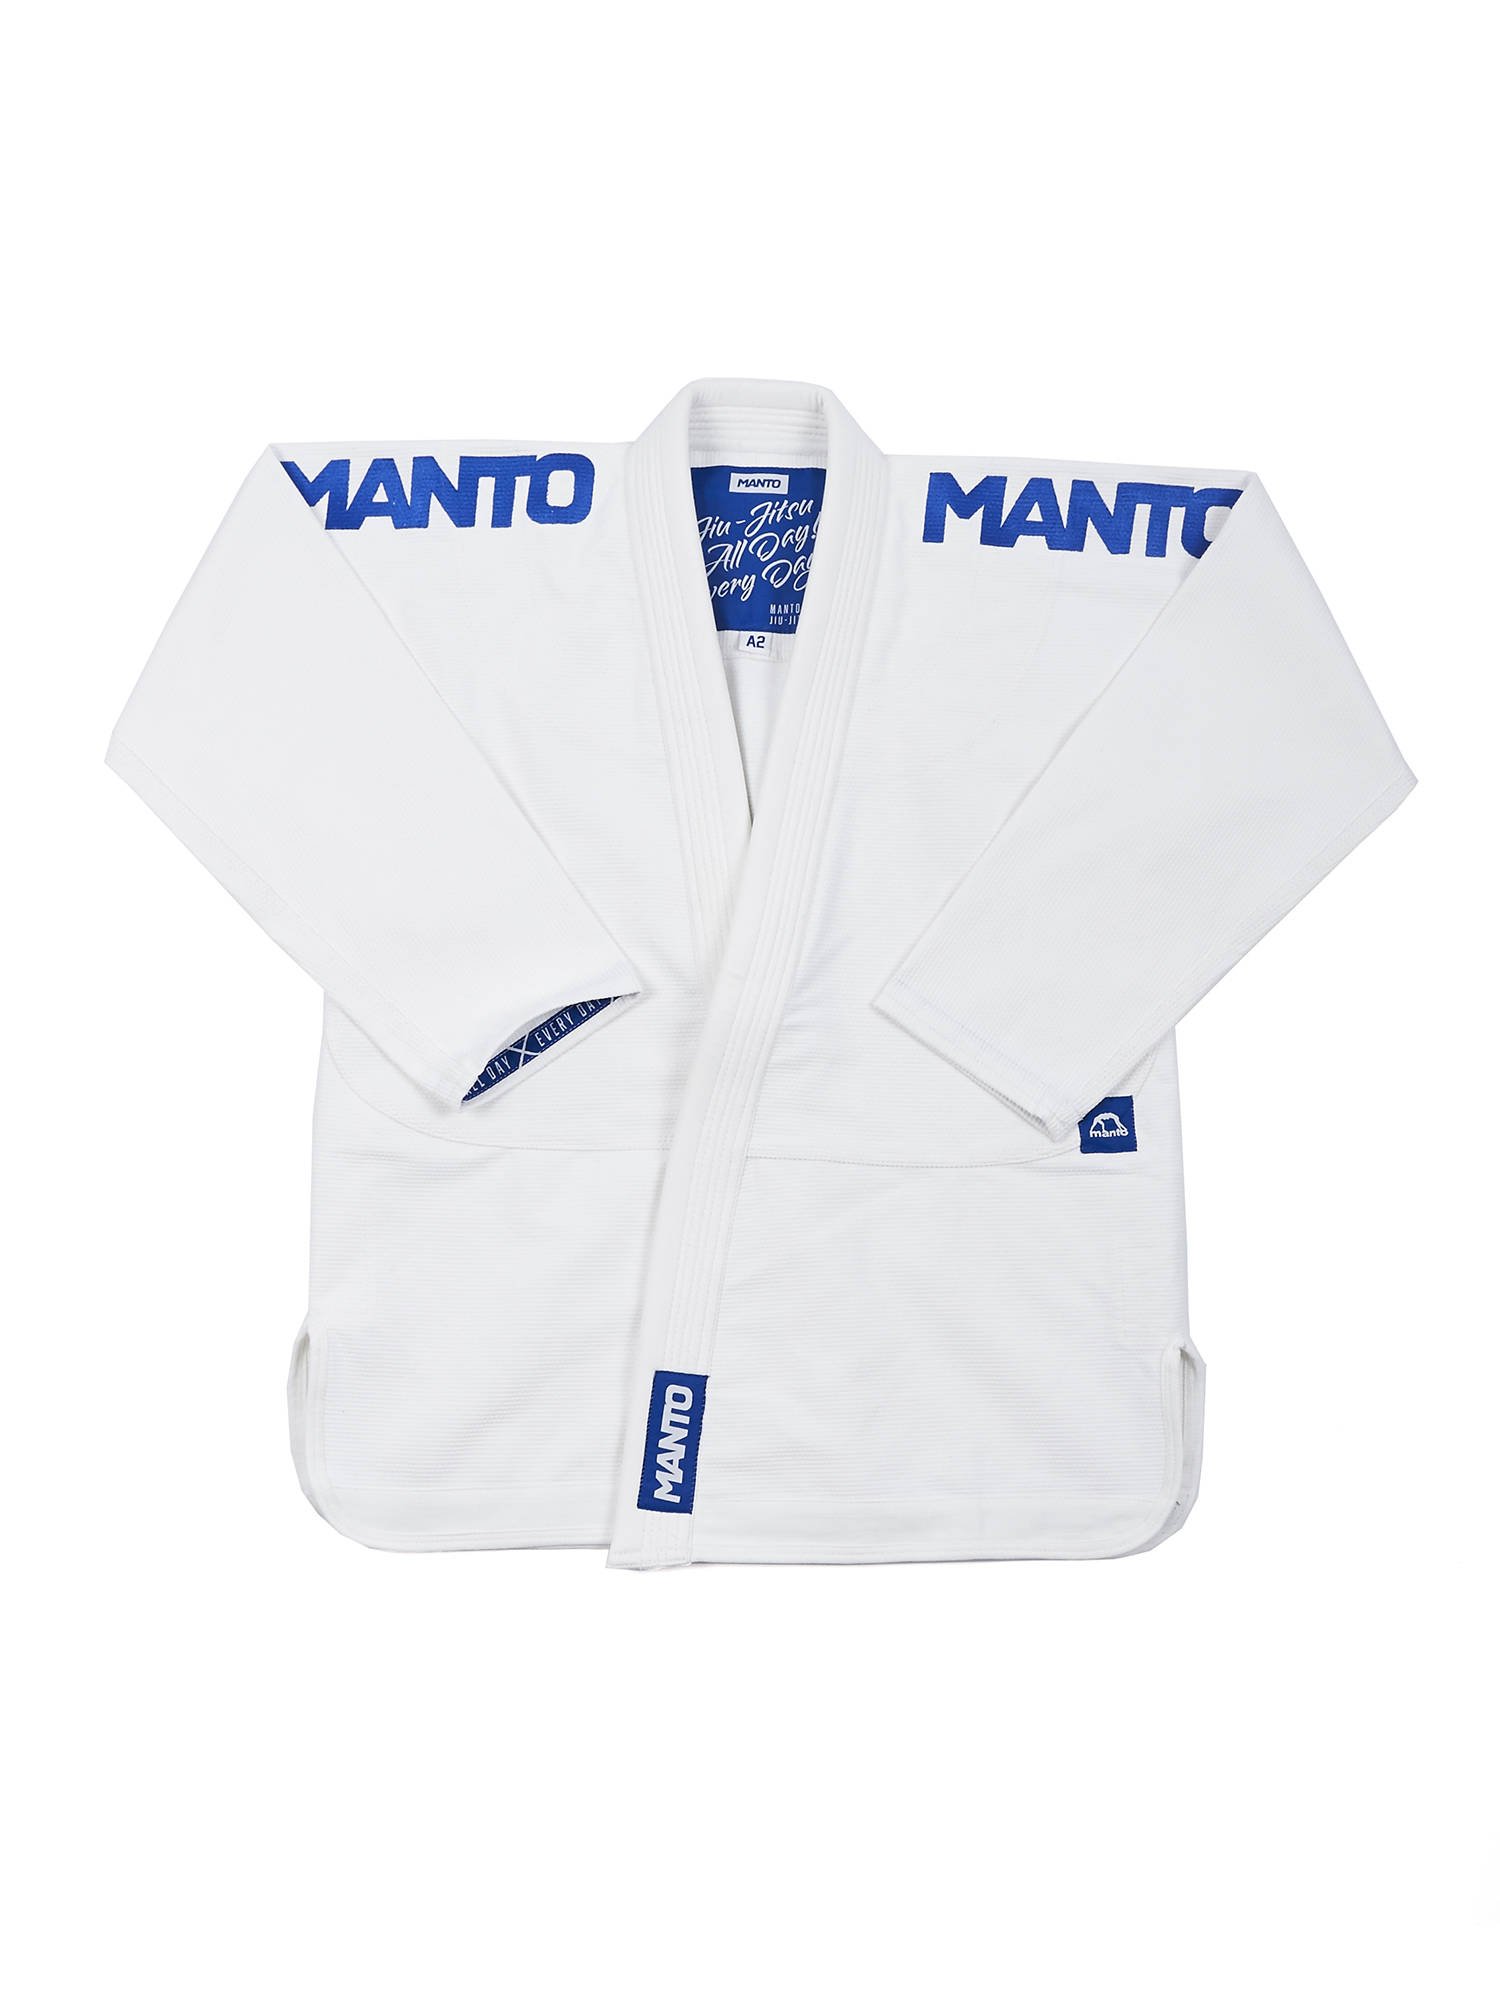 Kimono BJJ Manto, Gi X4 Manto, tienda BJJ, Manto fightwear